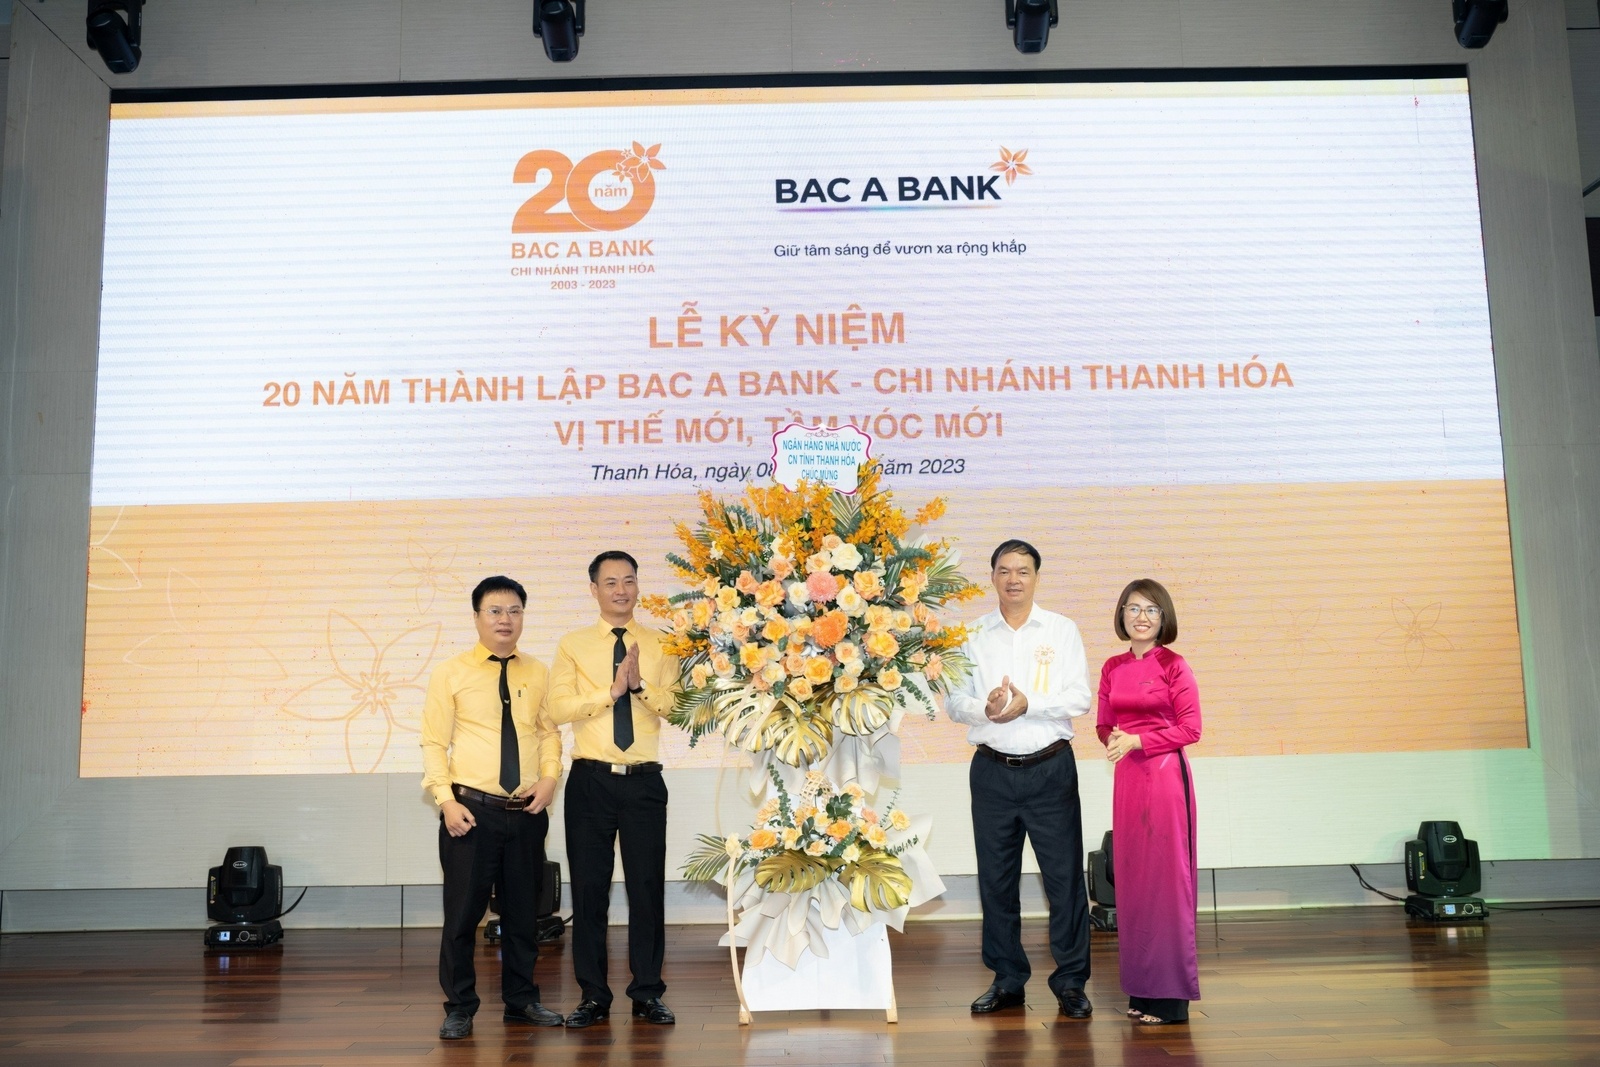 Trong 20 năm phát triển, BAC A BANK Chi nhánh Thanh Hóa luôn được khách hàng địa phương lựa chọn và tin tưởng